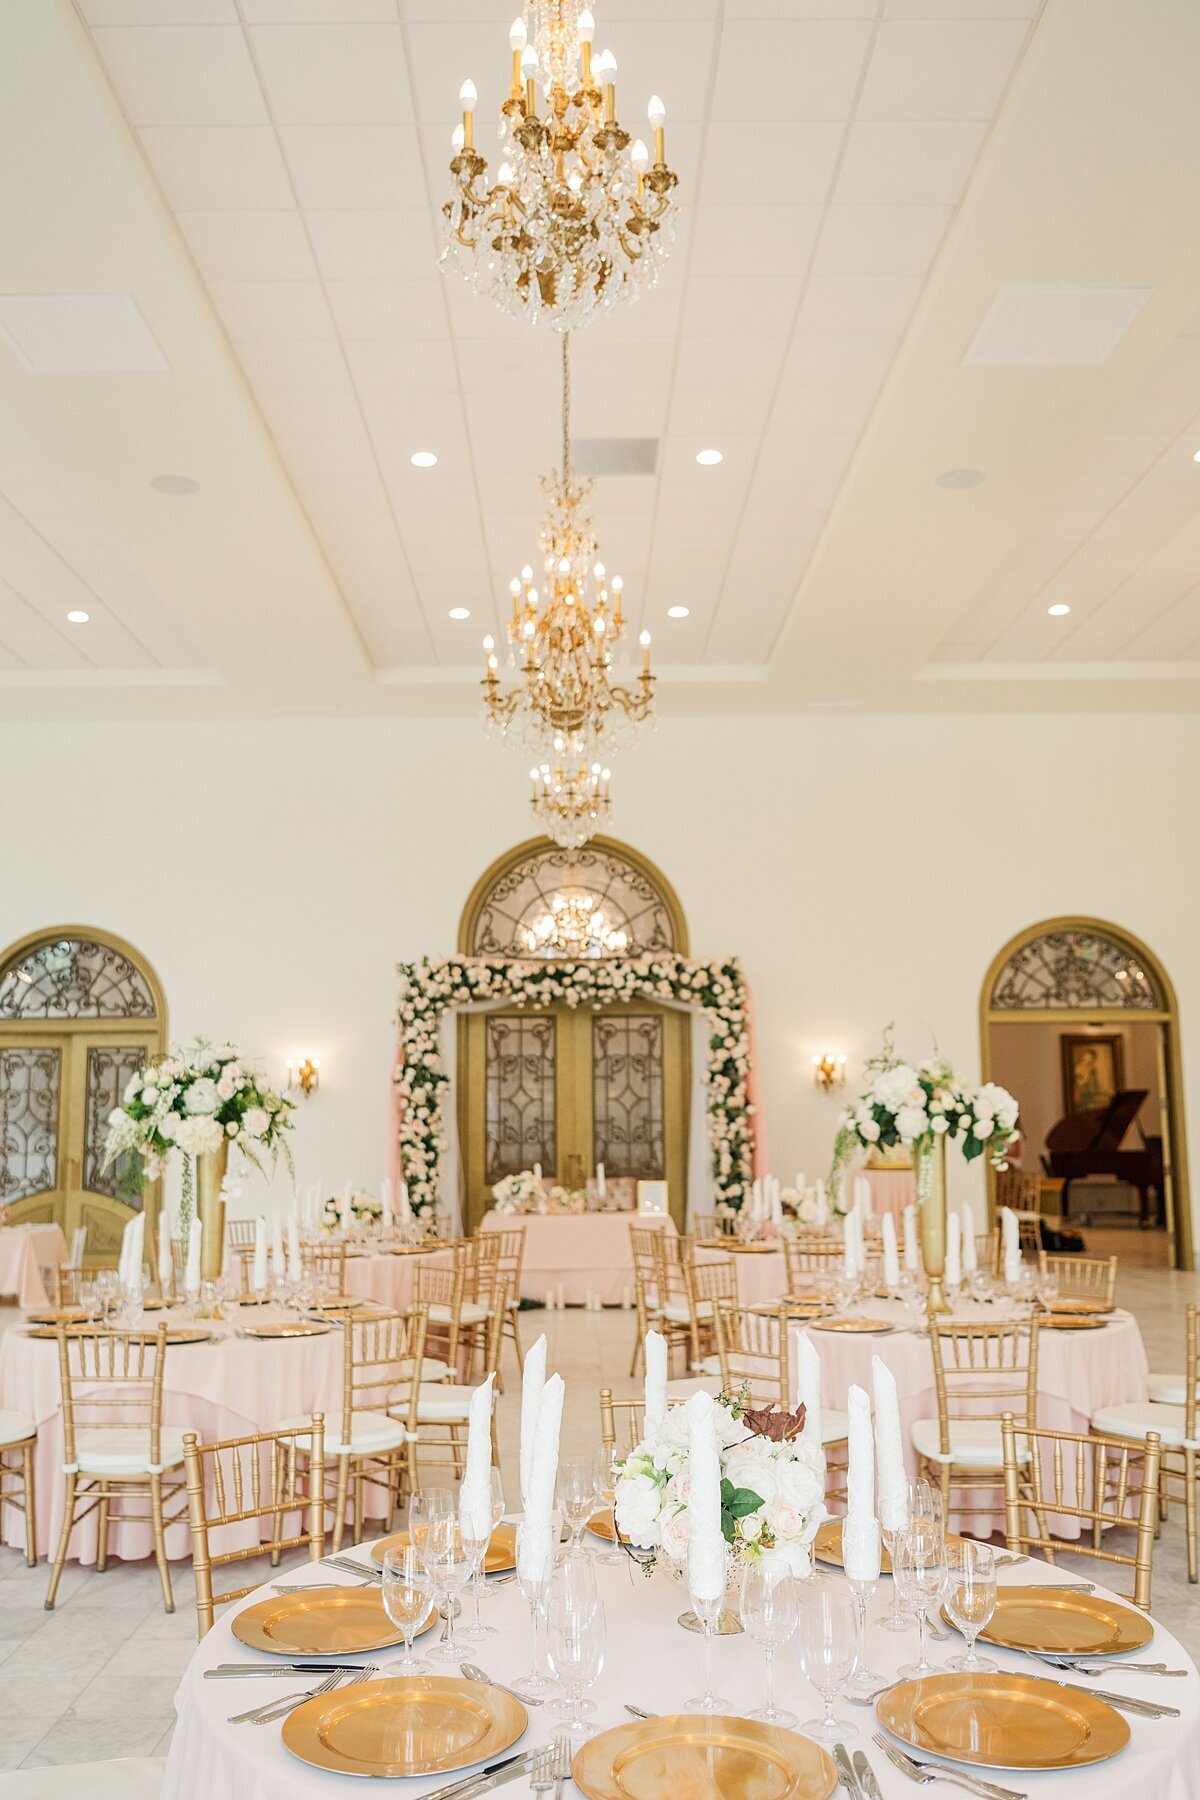 Chateau-des-Fleurs-wedding-reception-details